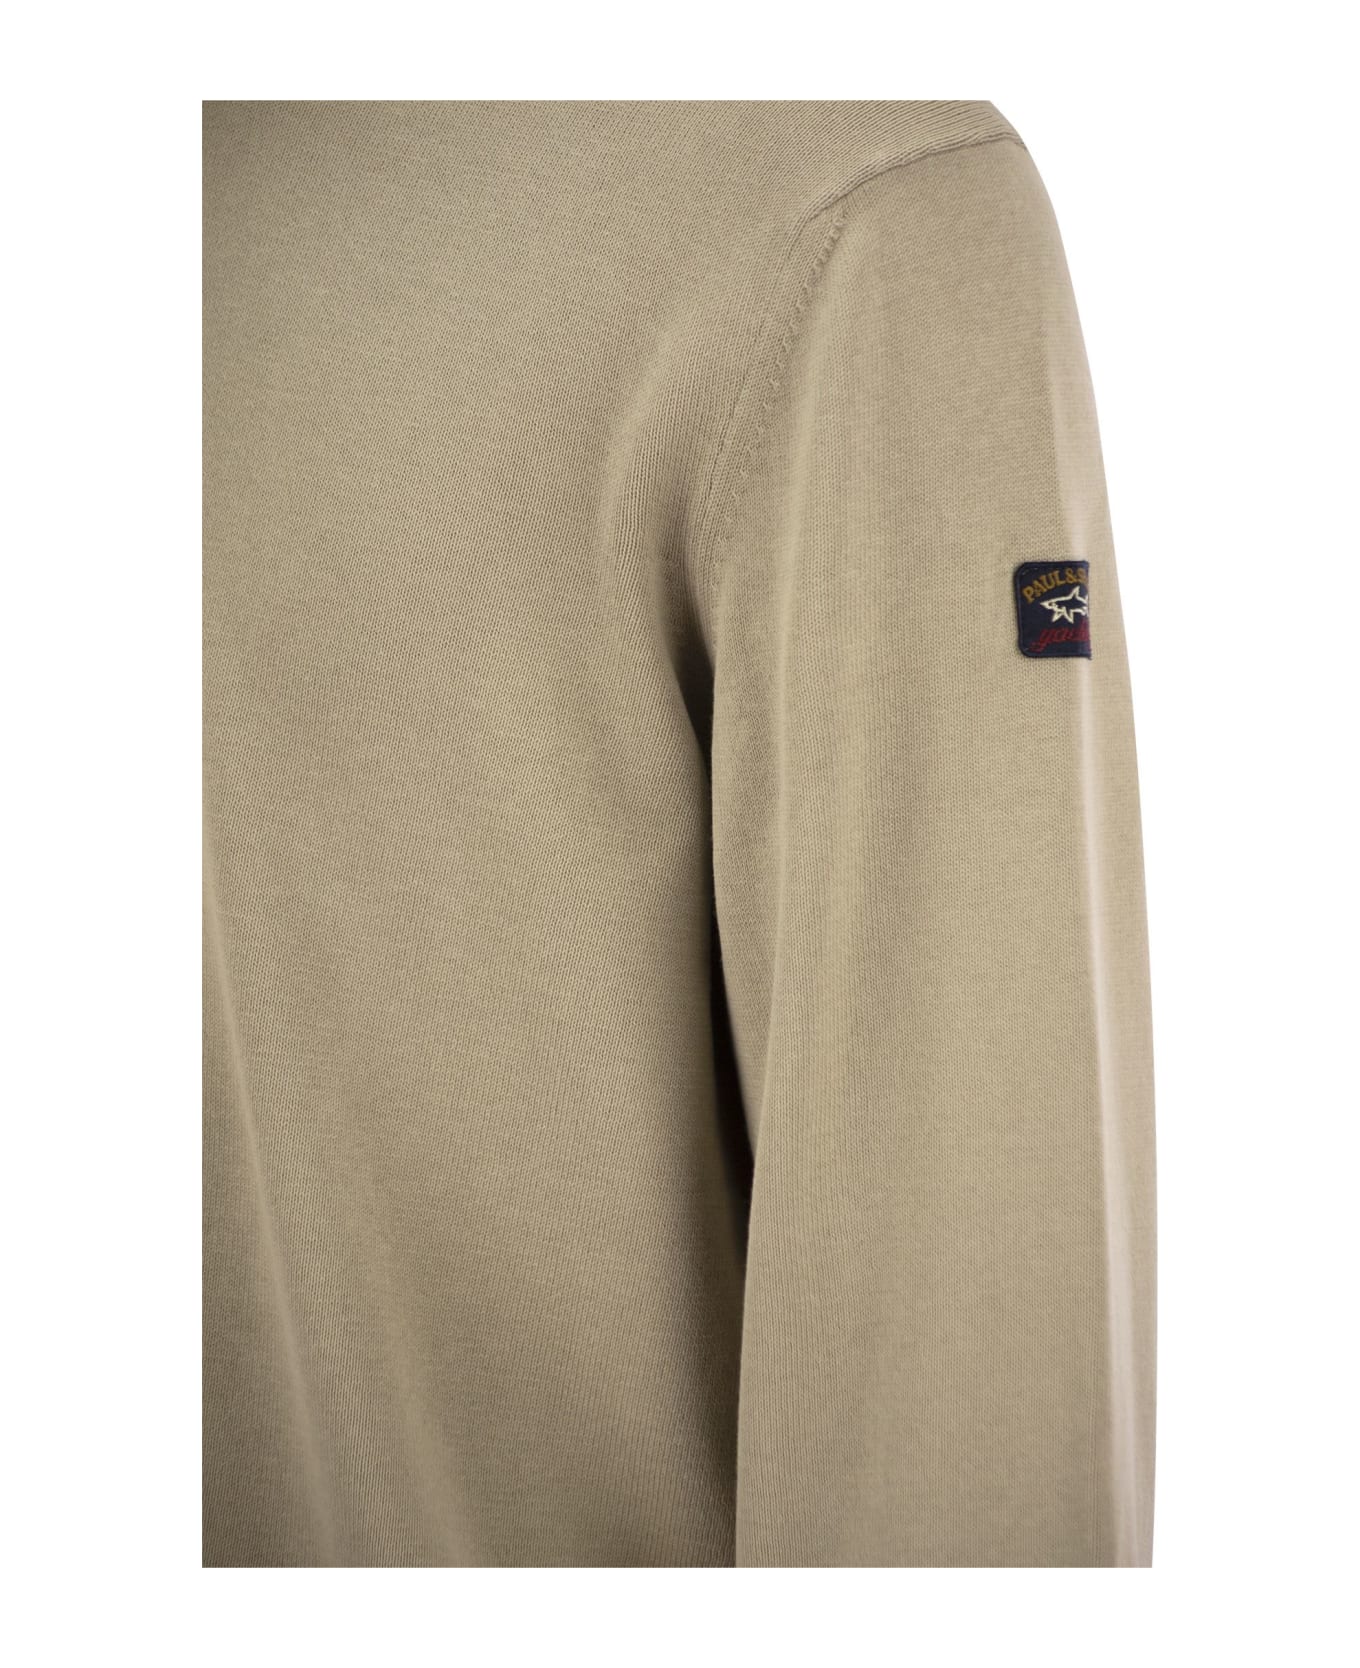 Paul&Shark Garment-dyed Cotton Jersey - Beige フリース